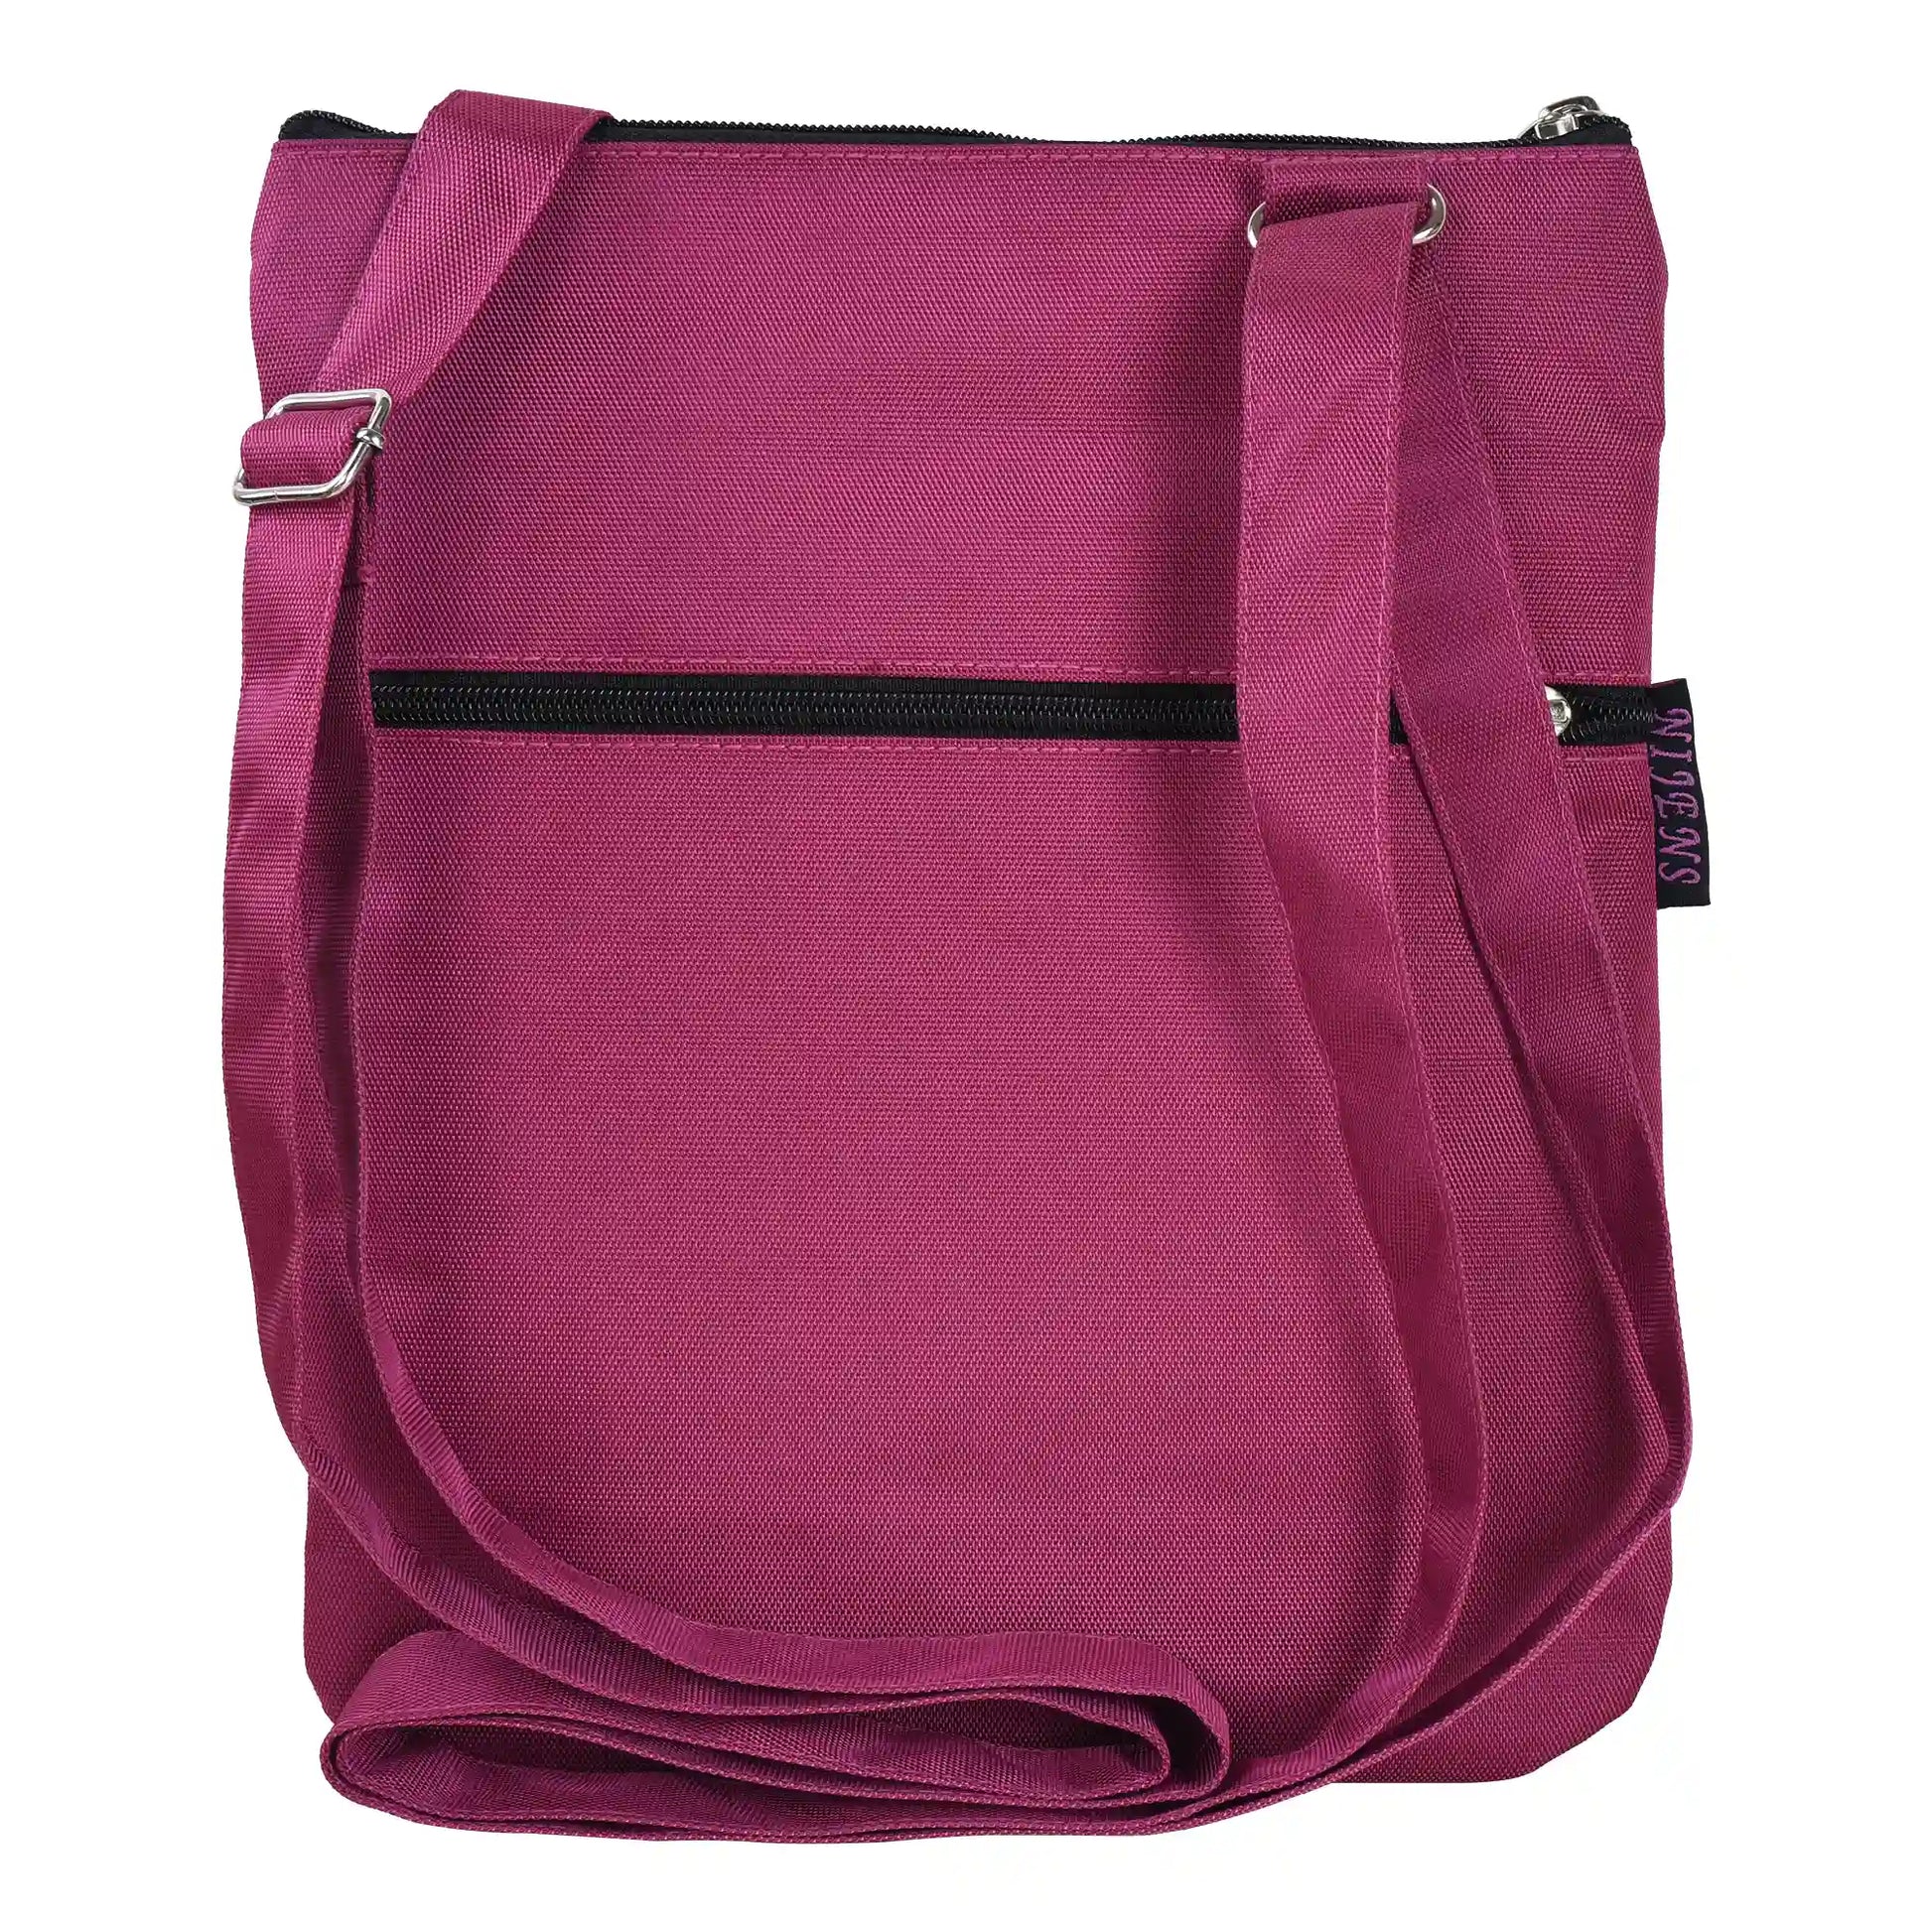 Gassi-Umhängetasche aus wasserabweisenden Stoff Pink mit großem Reißverschlussfach für Wertsachen und kleinem Reißverschlussfach hinten. 